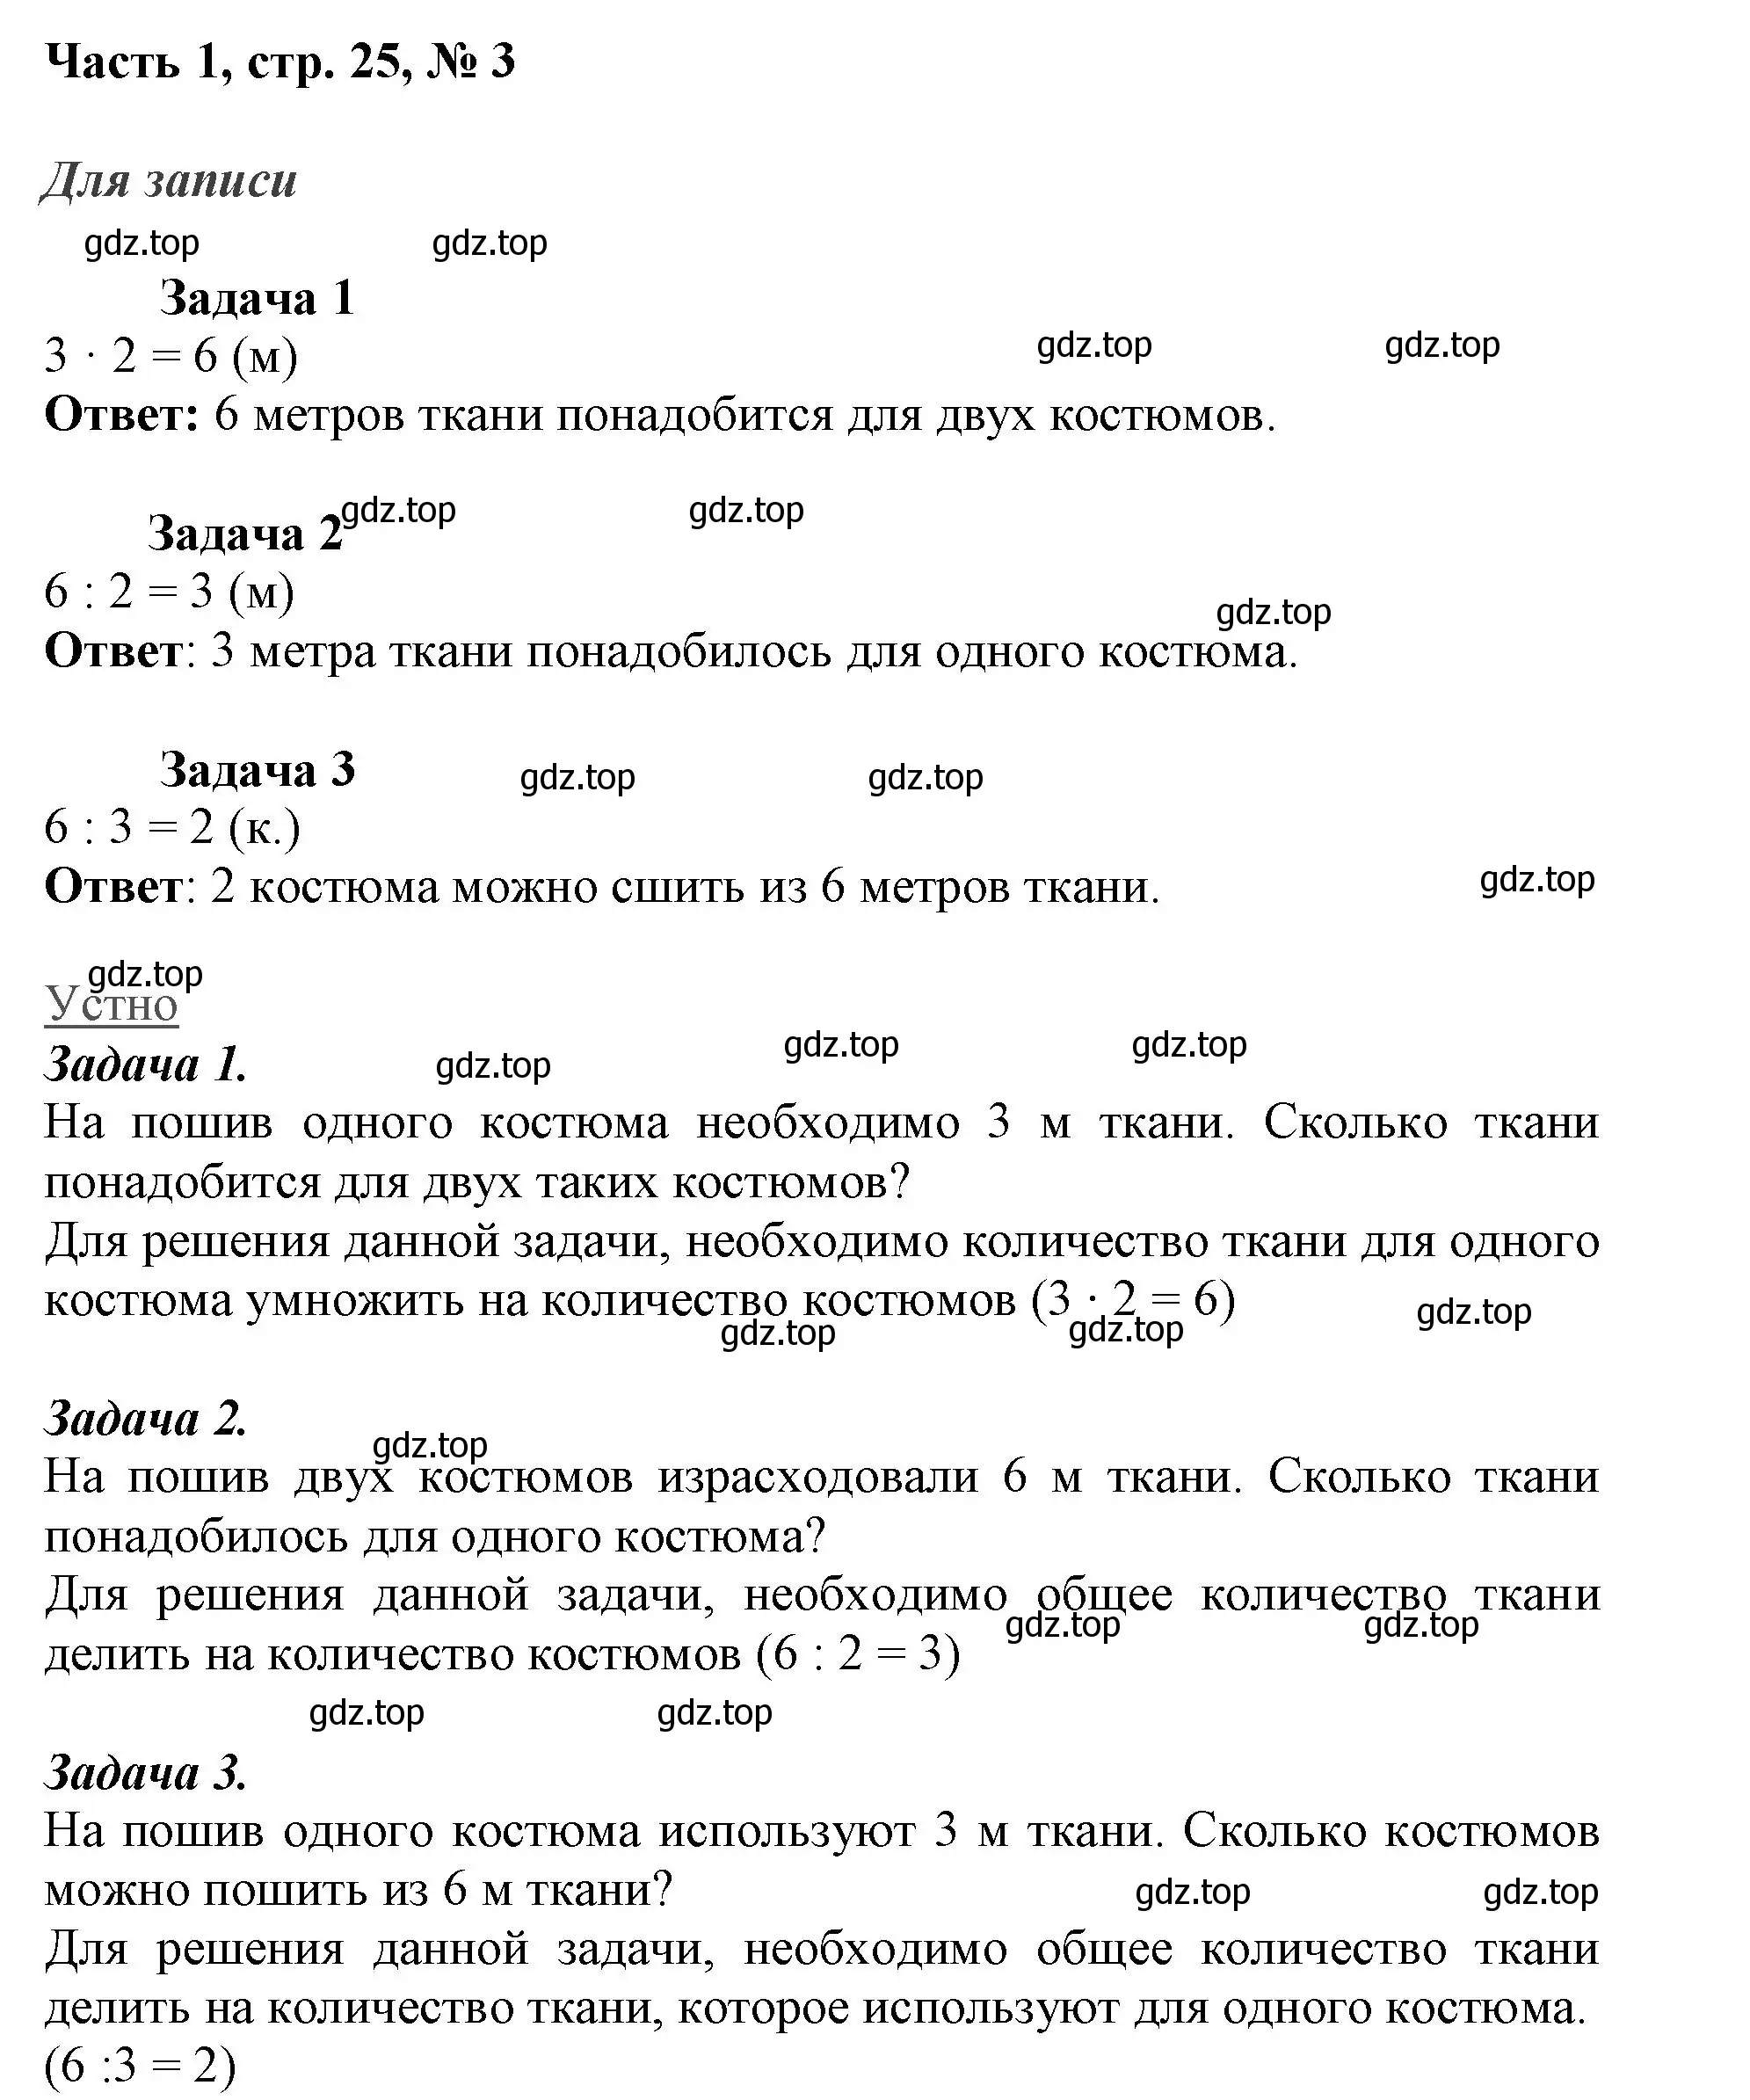 Решение номер 3 (страница 25) гдз по математике 3 класс Моро, Бантова, учебник 1 часть